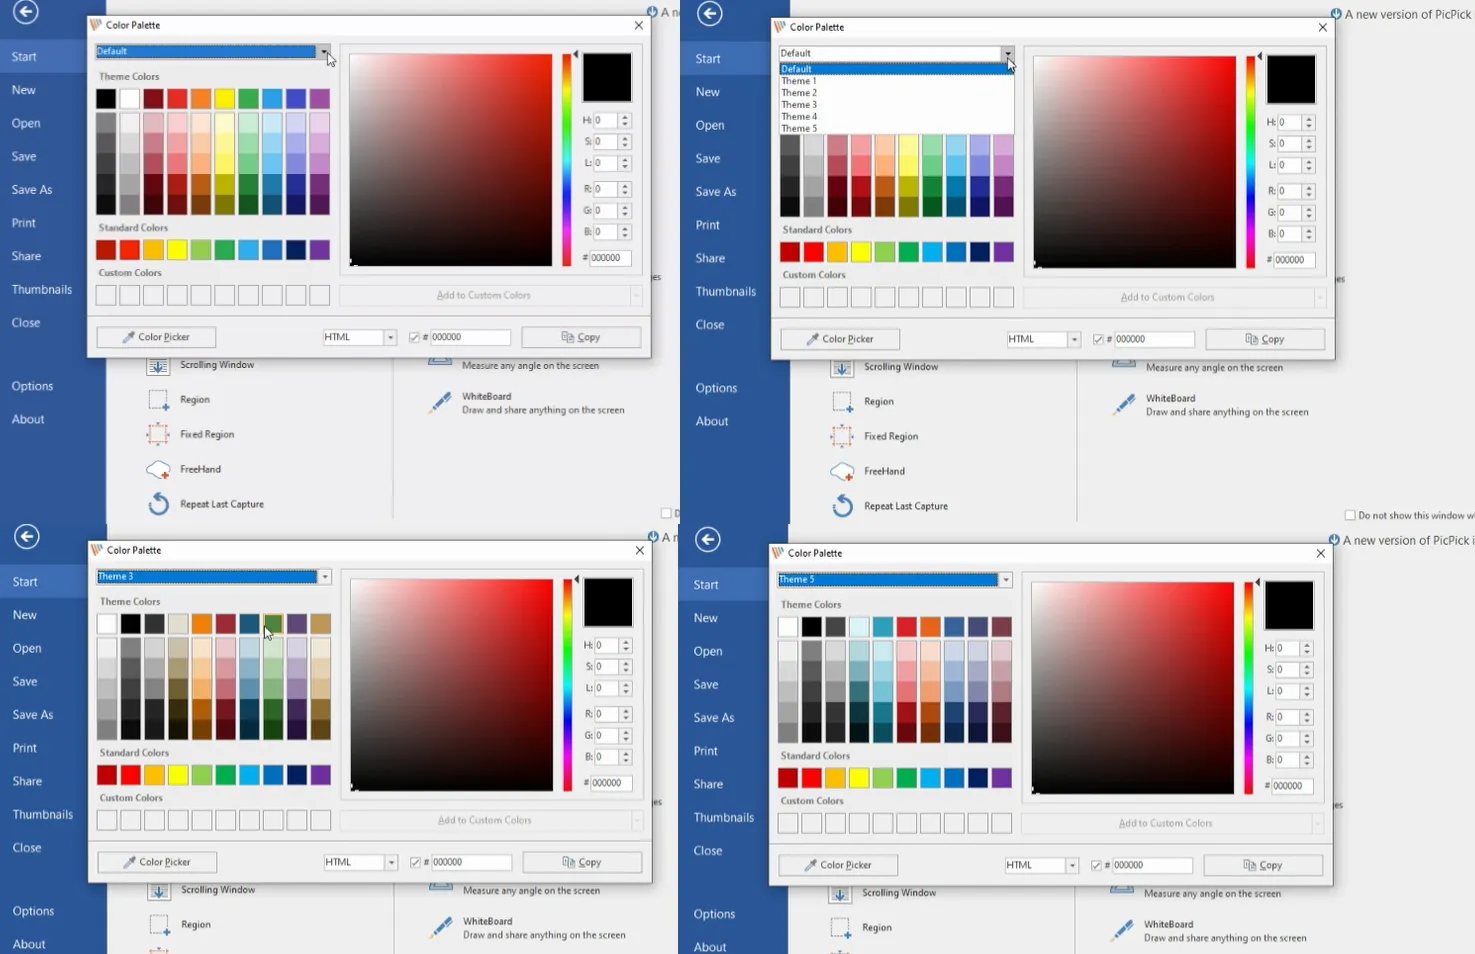 PicPick color palette options